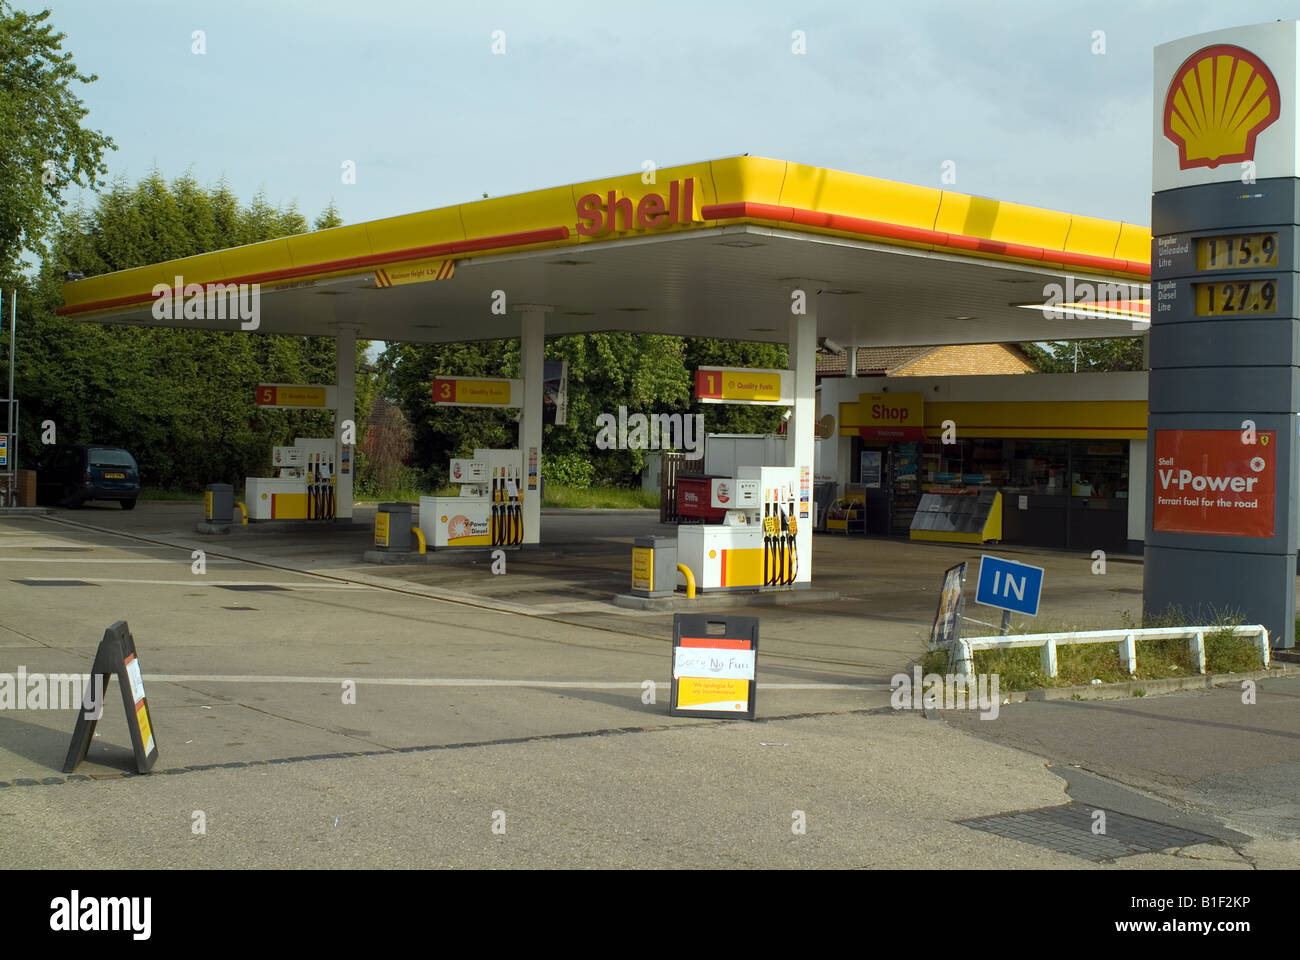 Station de remplissage d'essence shell vide sans carburant Banque D'Images